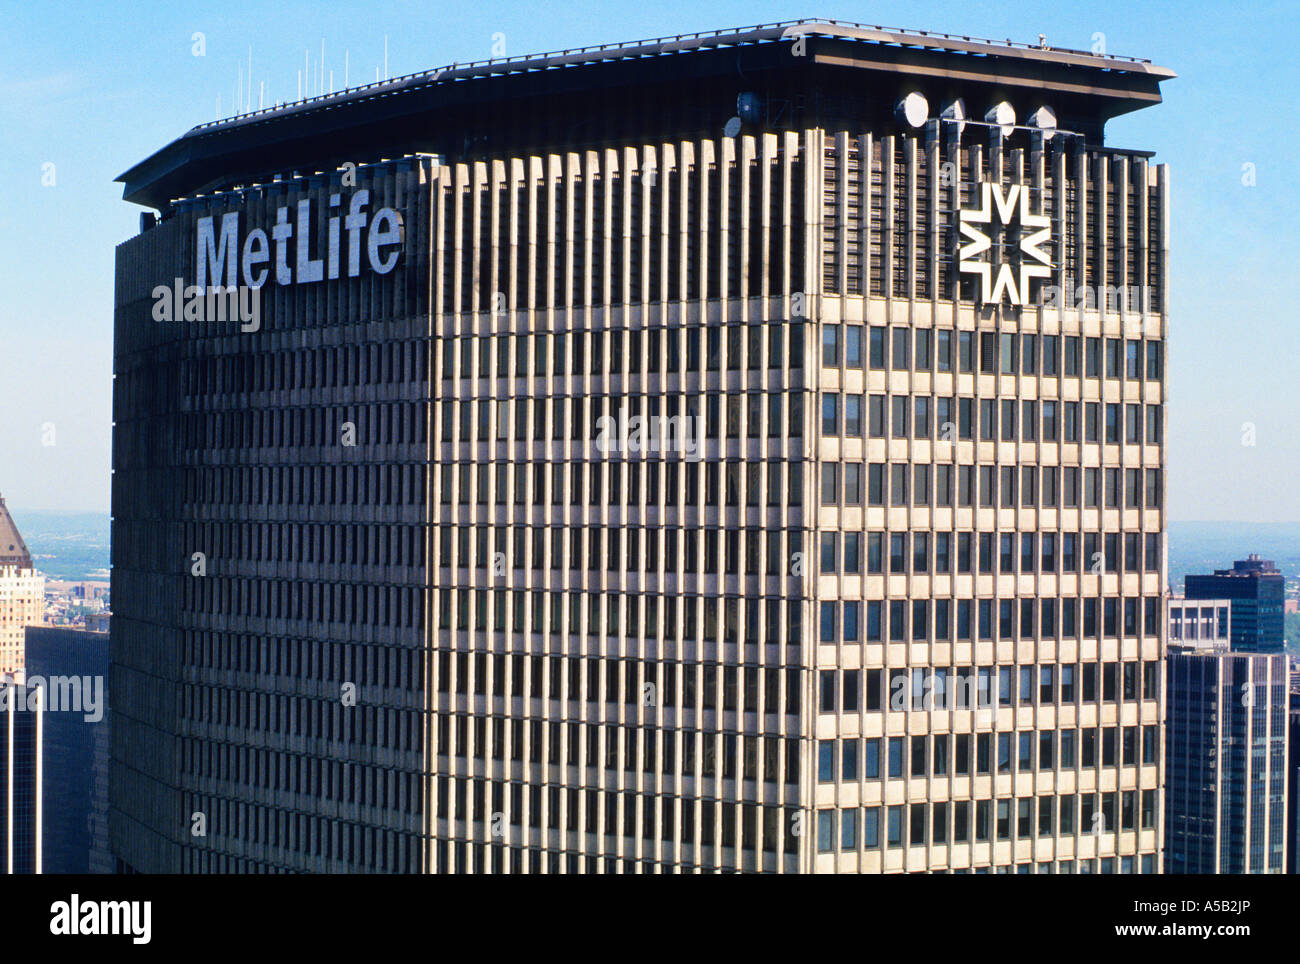 MetLife Building, New York, États-Unis, chevauche Park Avenue sur Grand Central Station. Un gratte-ciel moderniste du milieu du siècle achevé en 1963. Gros plan sur les USA Banque D'Images